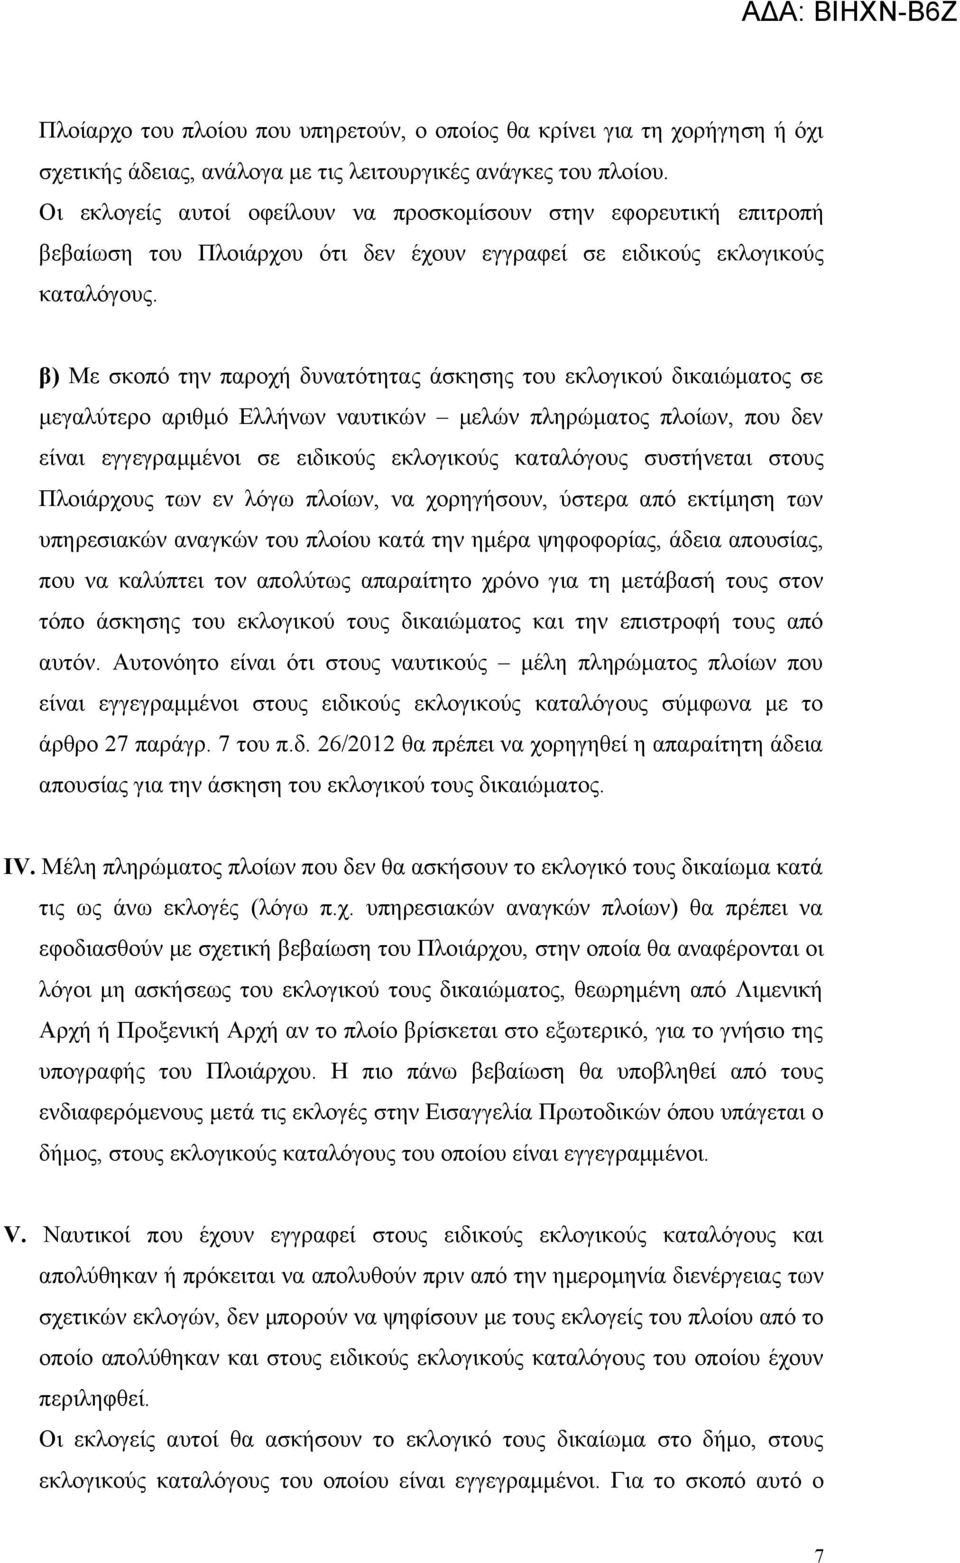 β) Με σκοπό την παροχή δυνατότητας άσκησης του εκλογικού δικαιώματος σε μεγαλύτερο αριθμό Ελλήνων ναυτικών μελών πληρώματος πλοίων, που δεν είναι εγγεγραμμένοι σε ειδικούς εκλογικούς καταλόγους